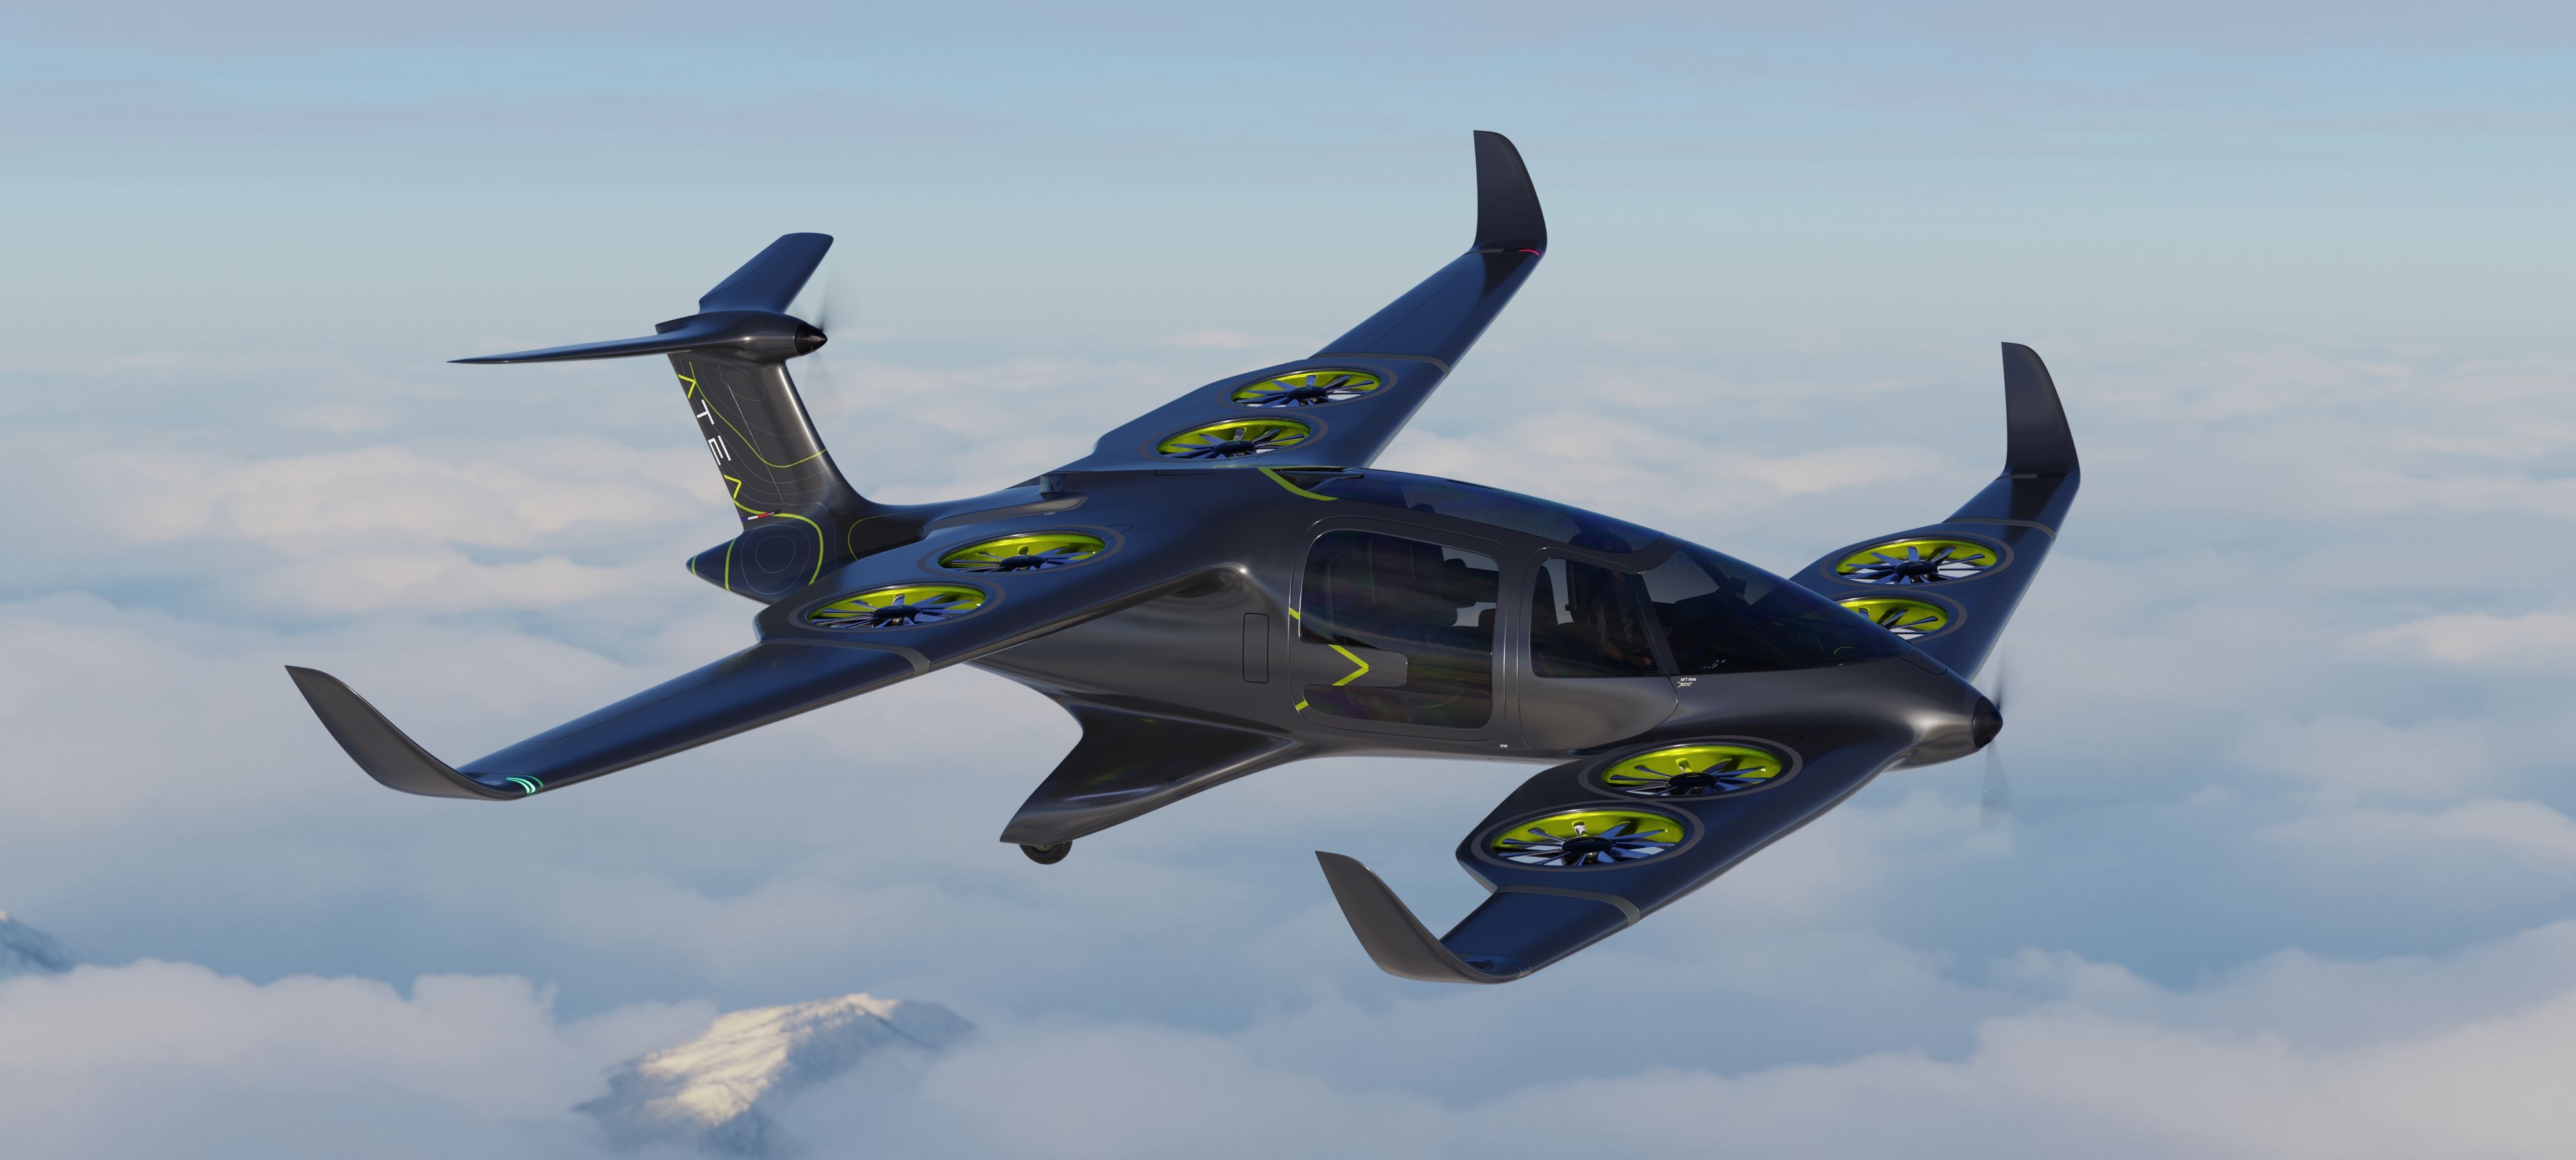 ATEA design - Ascendance Flight Technologies